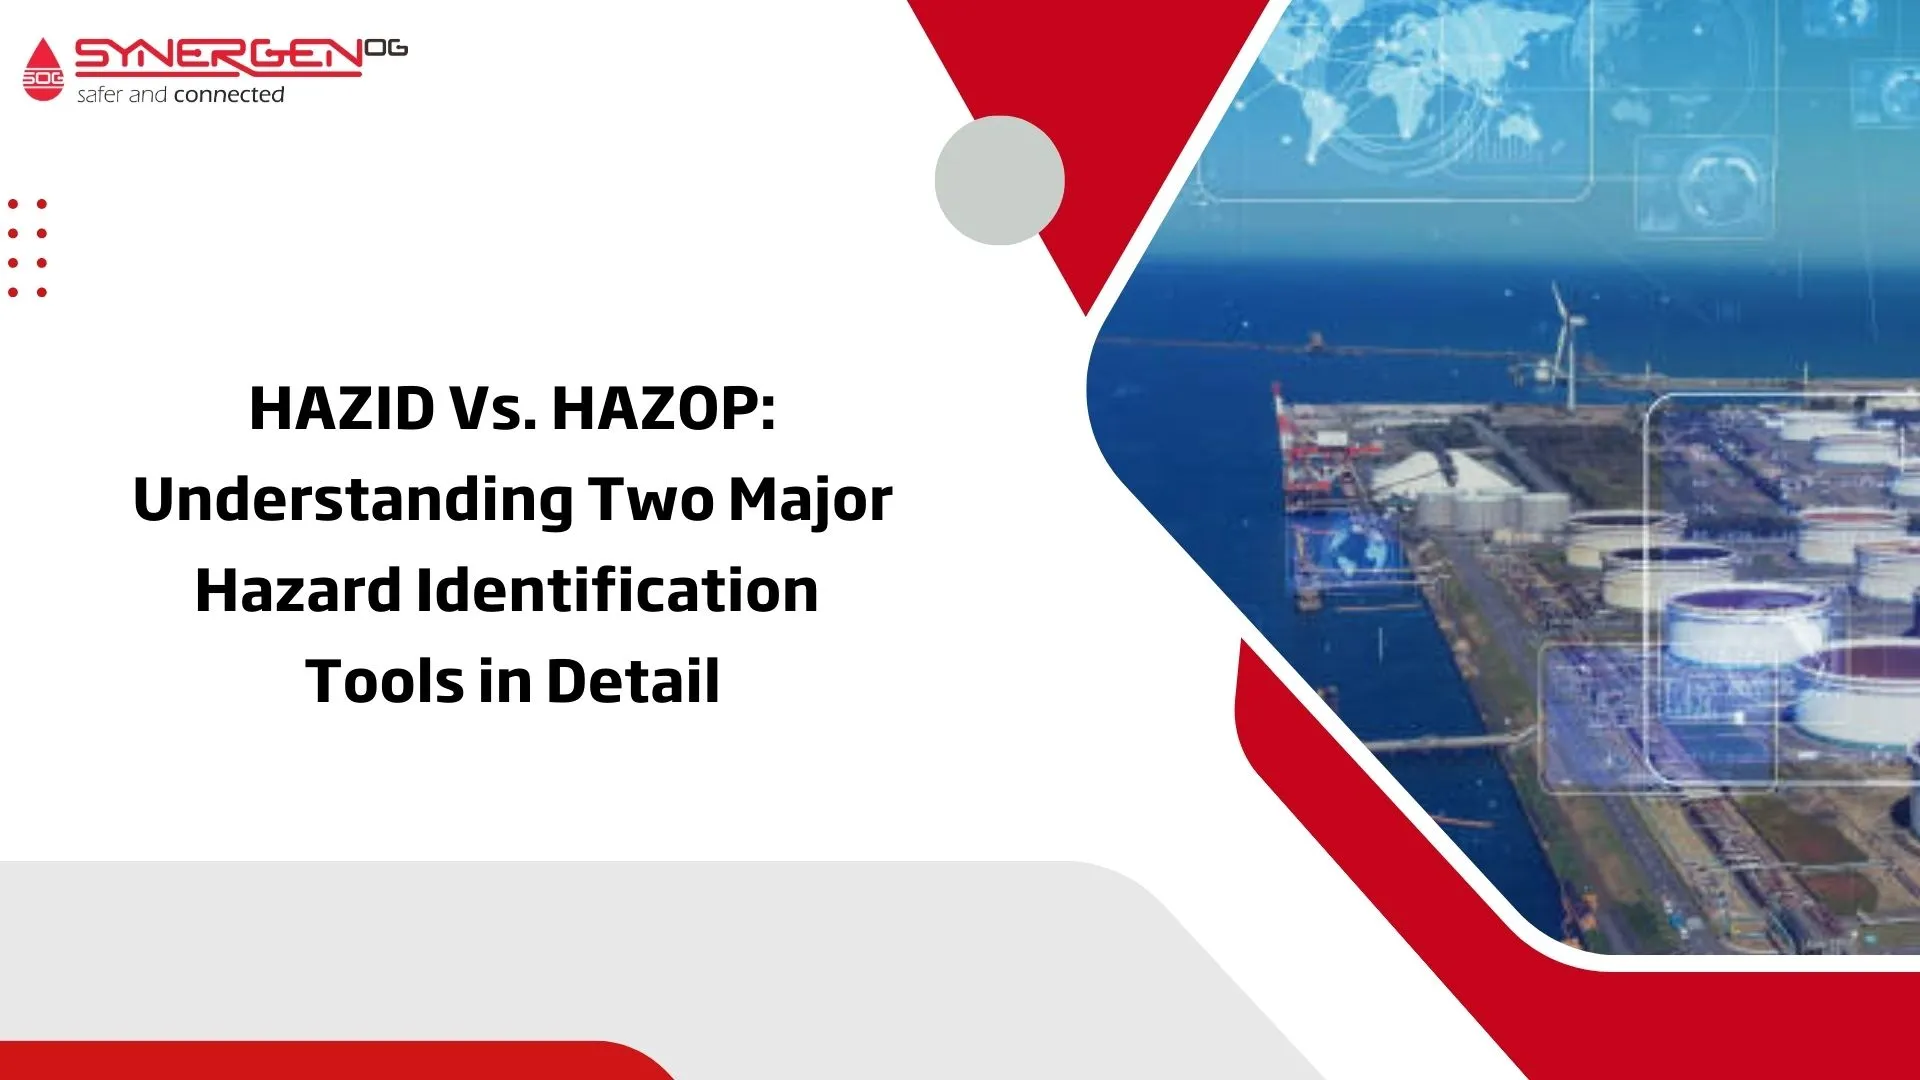 HAZID Vs HAZOP: Understanding 2 major hazard identification tools in detail